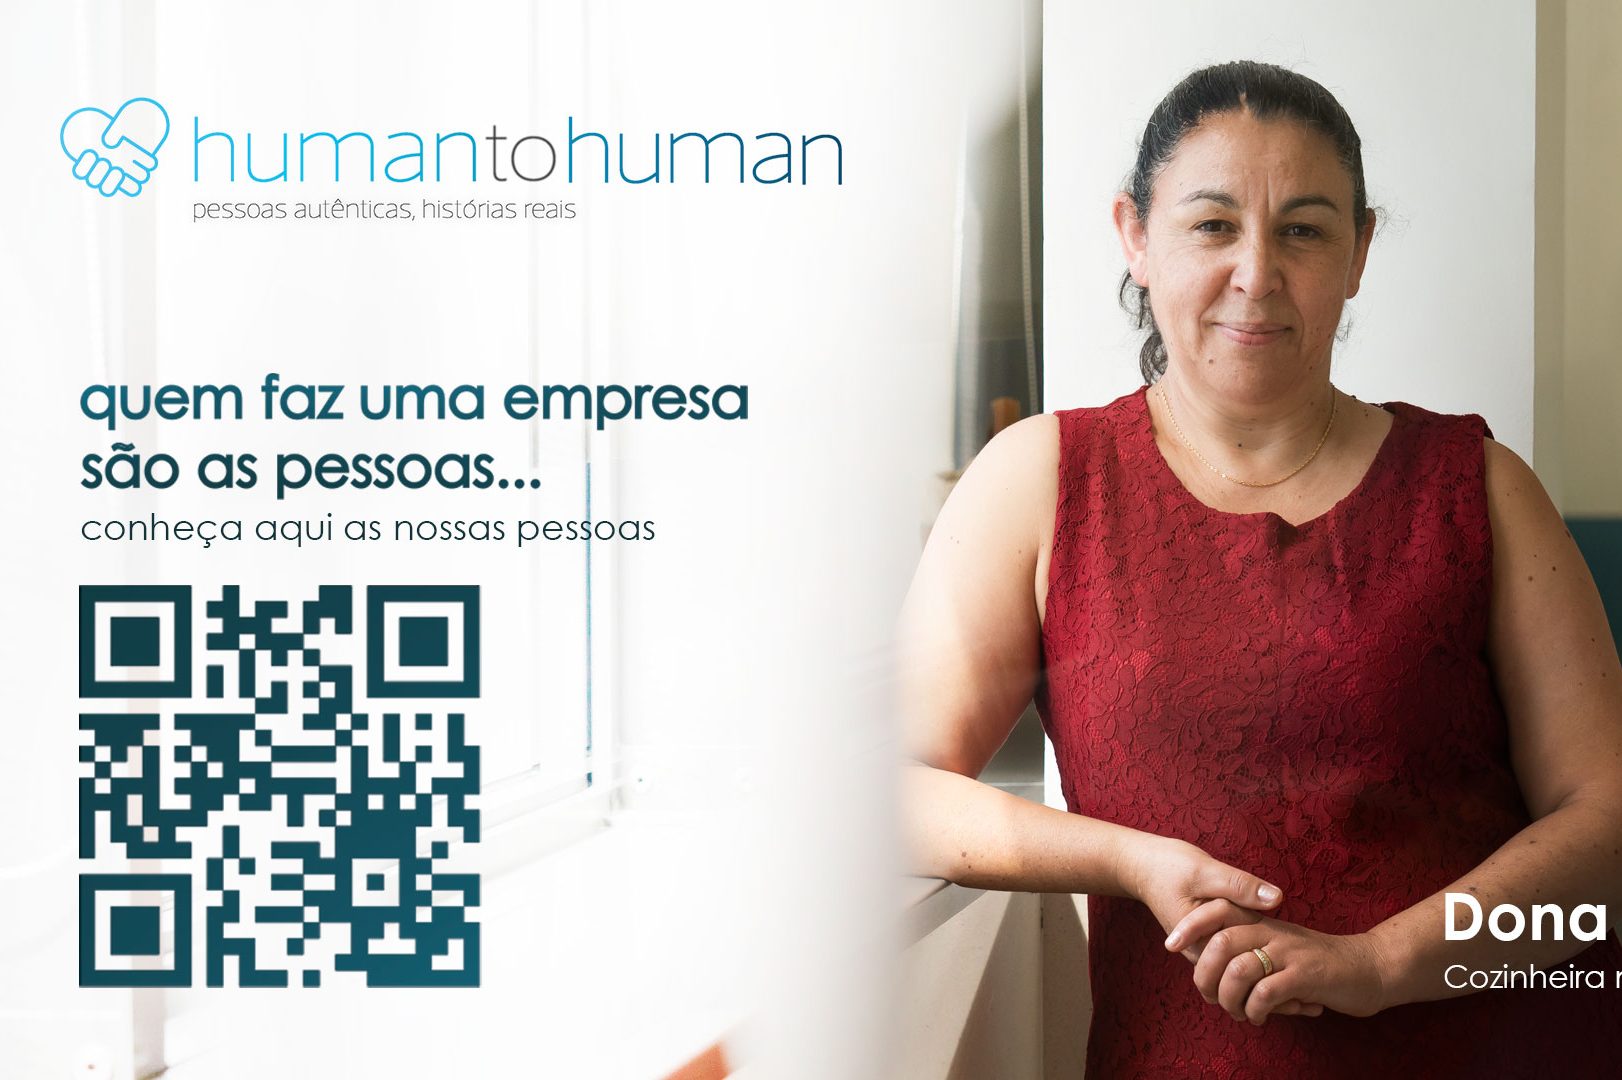 Human to Human - As nossas pessoas